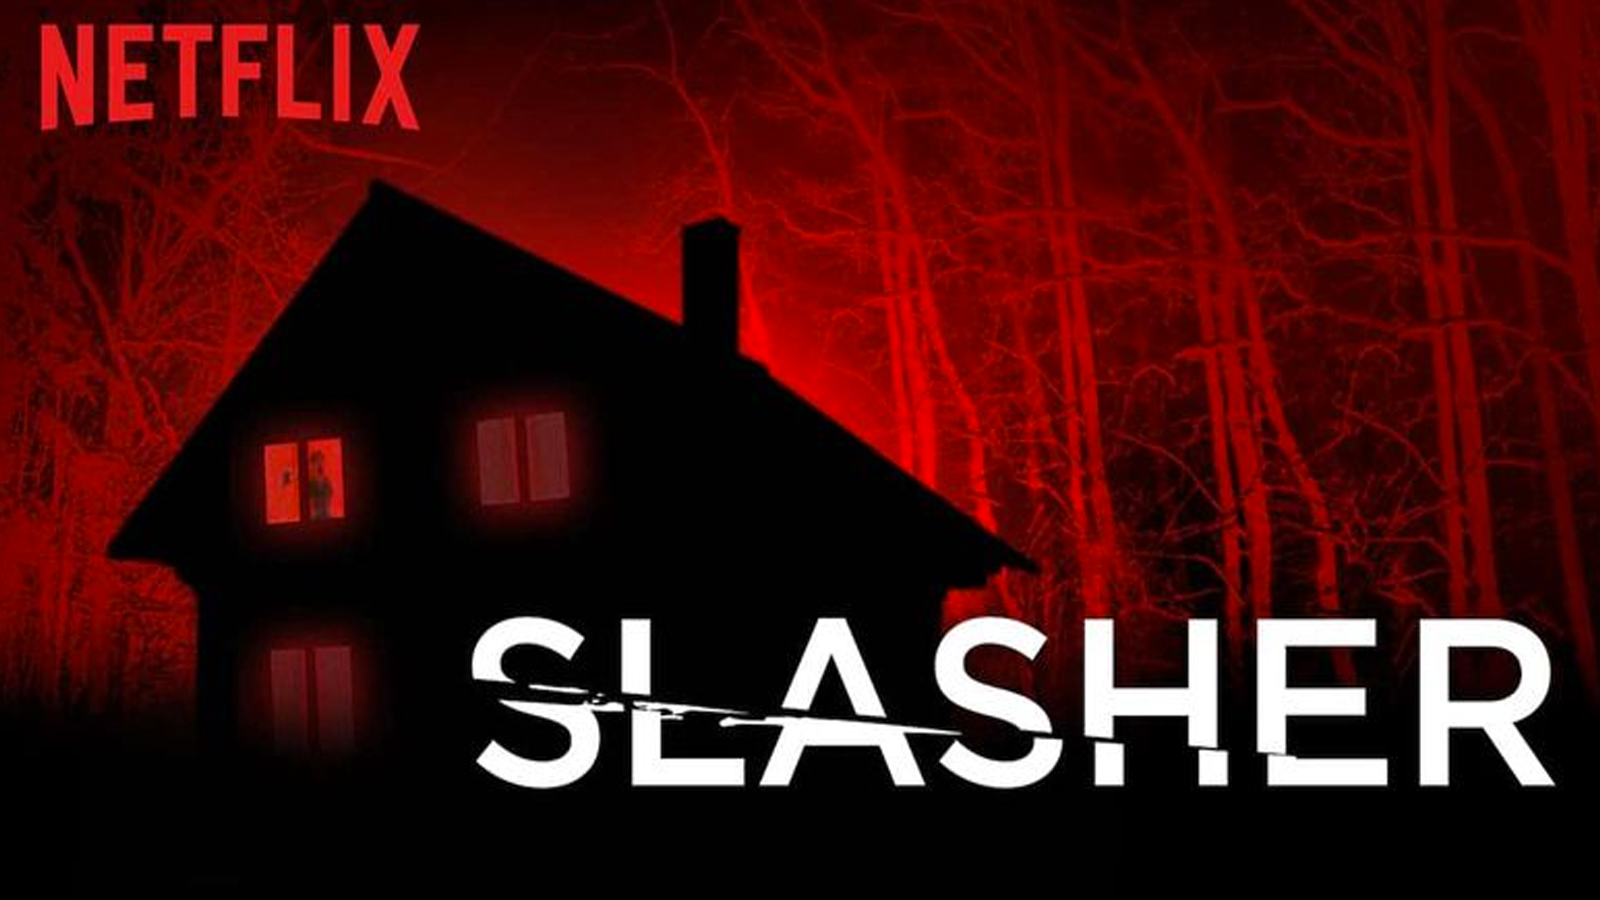 Netflix Horror Slasher